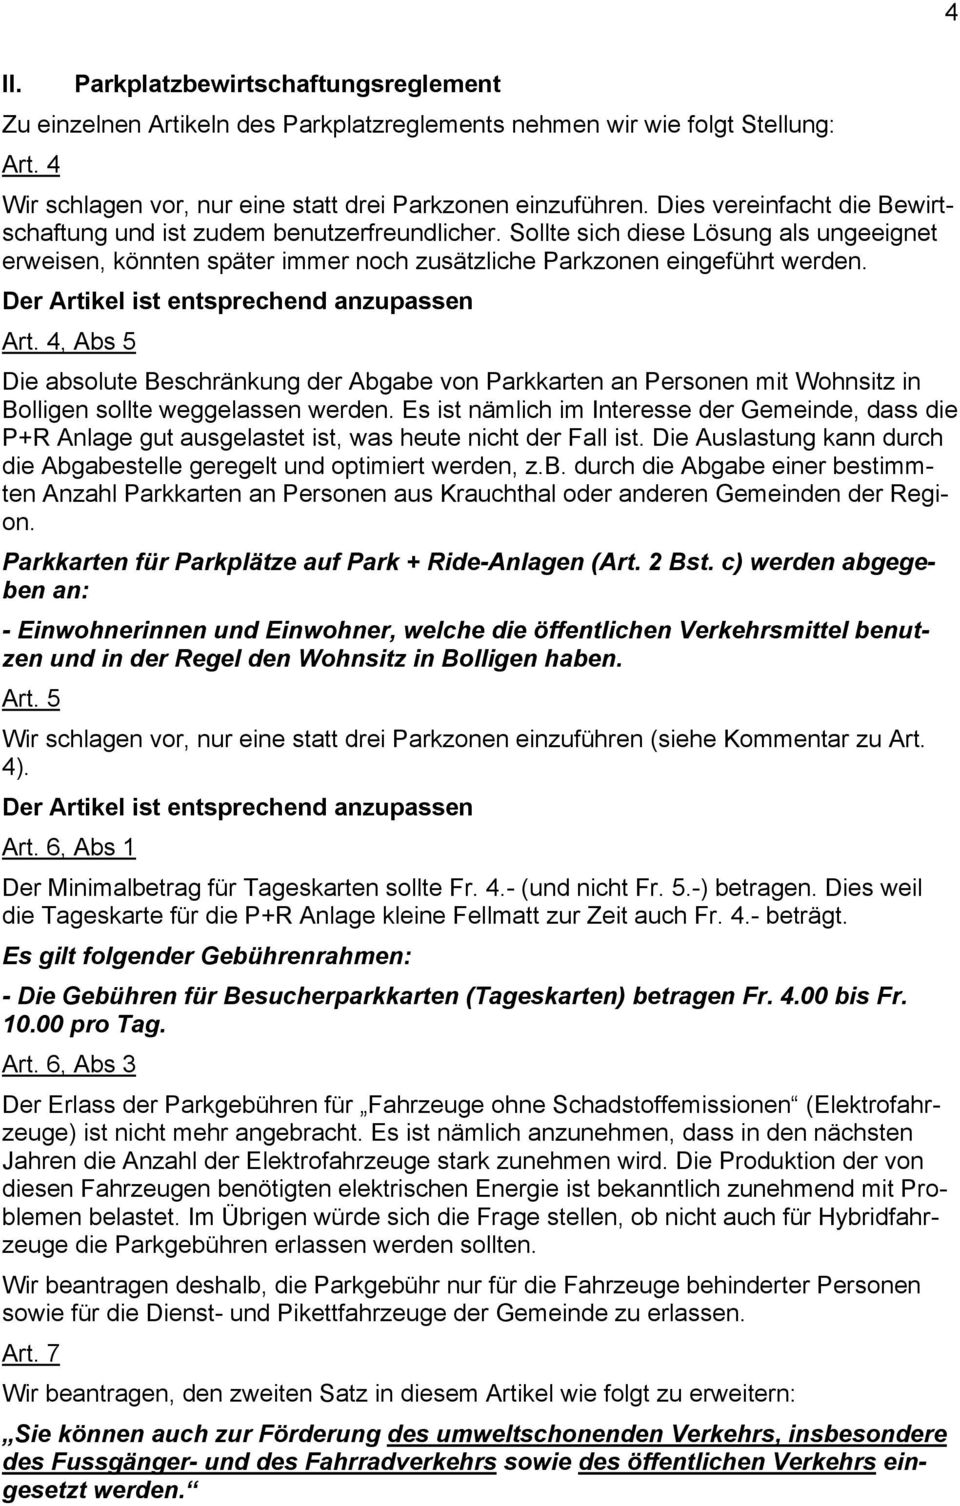 Der Artikel ist entsprechend anzupassen Art. 4, Abs 5 Die absolute Beschränkung der Abgabe von Parkkarten an Personen mit Wohnsitz in Bolligen sollte weggelassen werden.